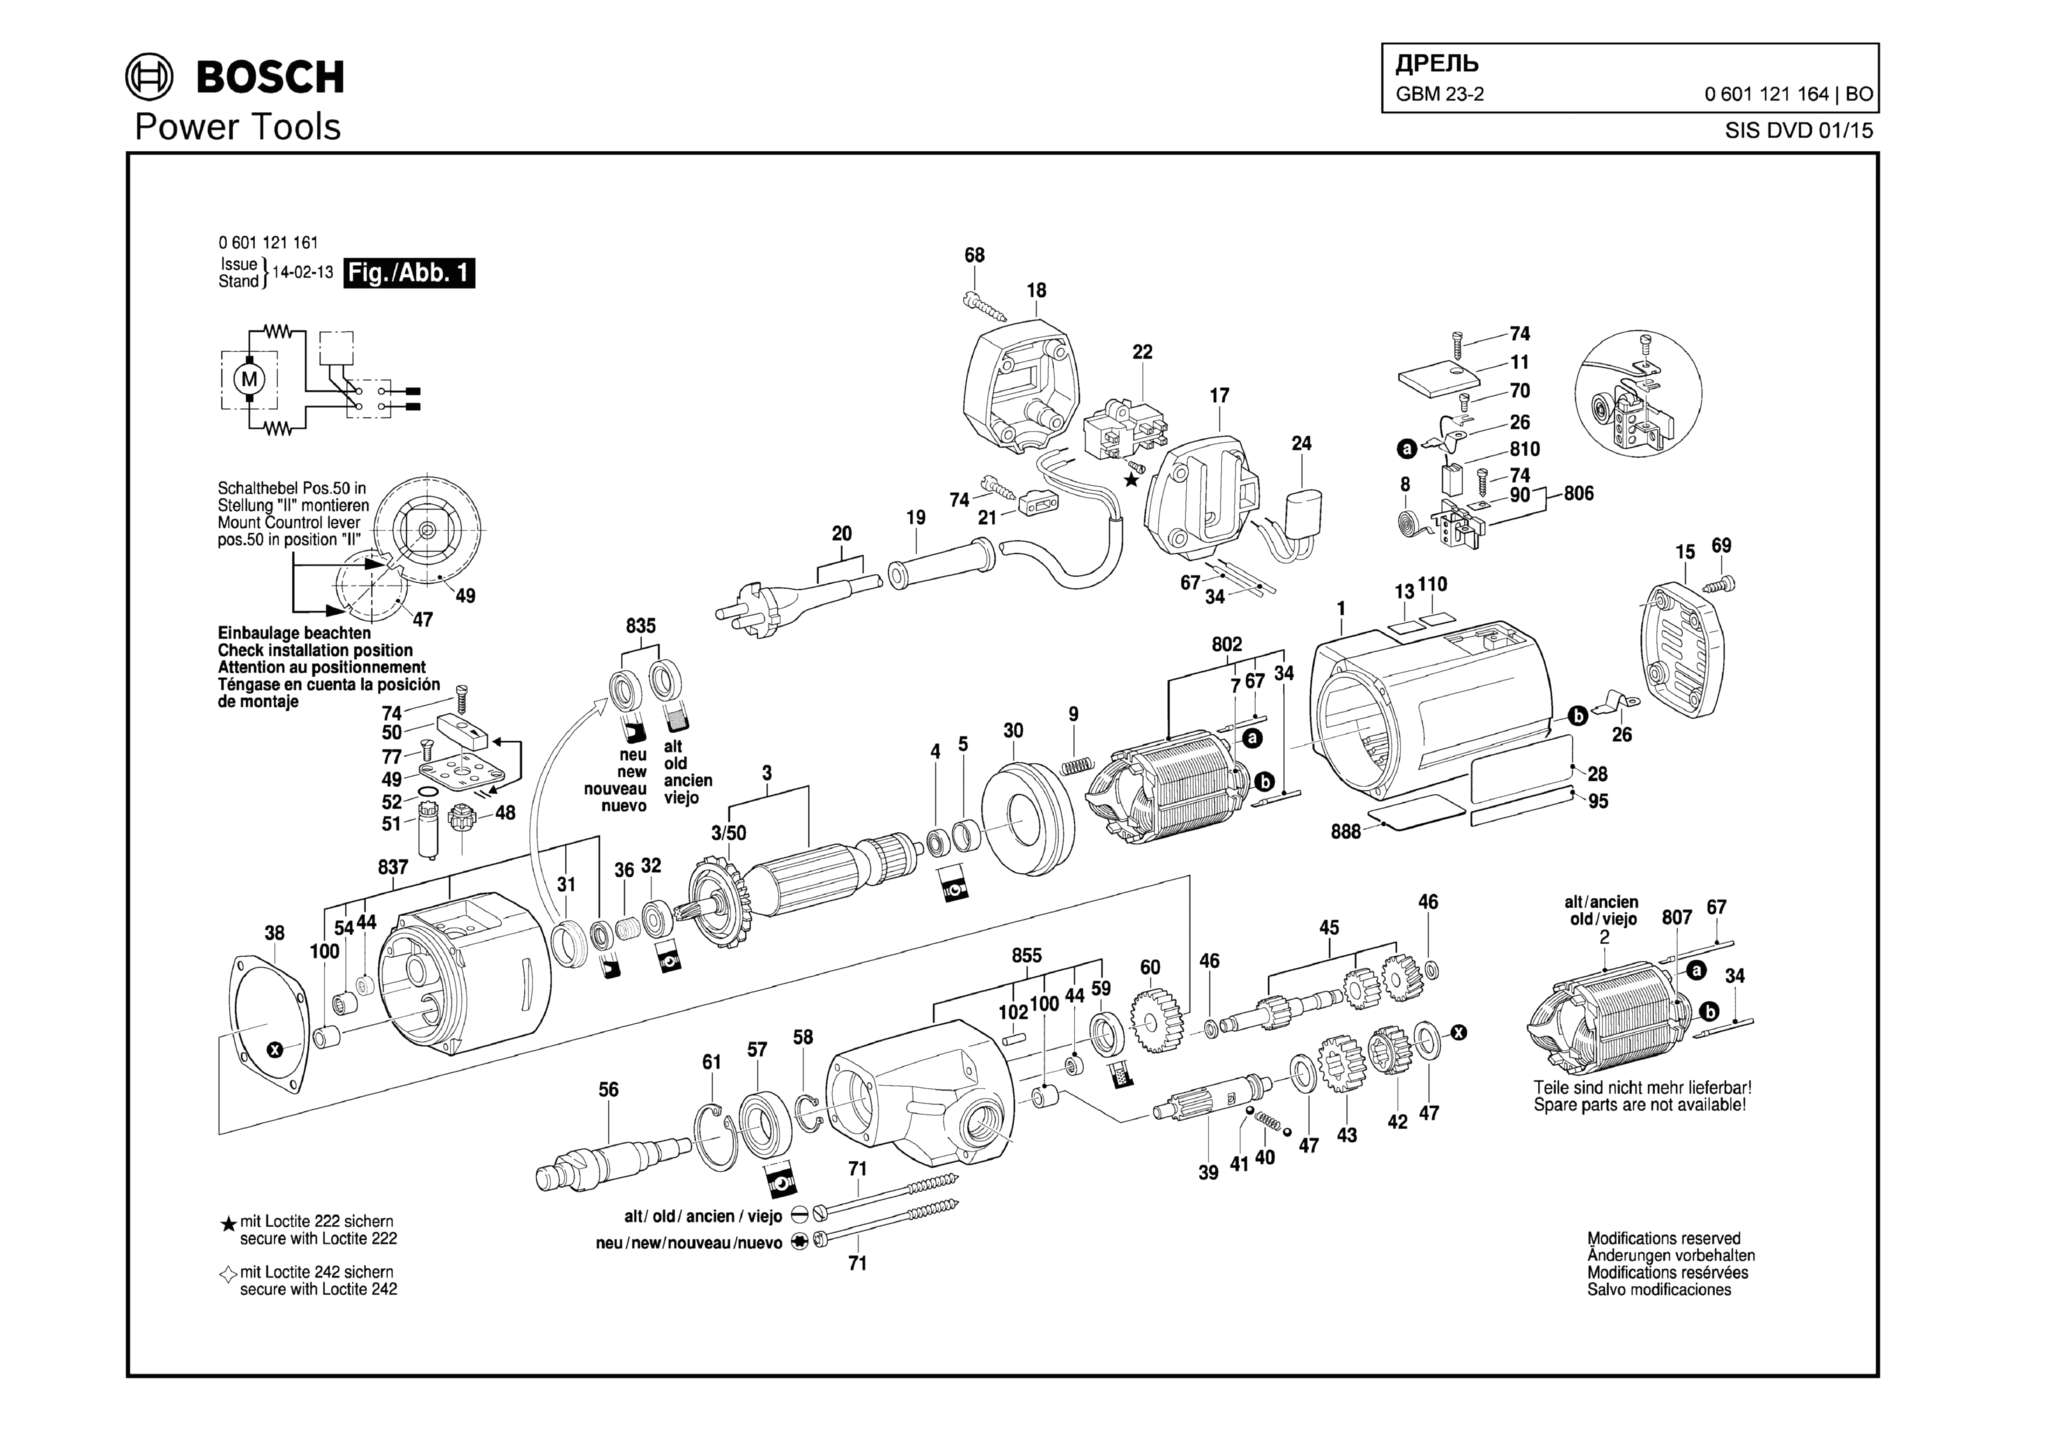 Запчасти, схема и деталировка Bosch GBM 23-2 (ТИП 0601121164)